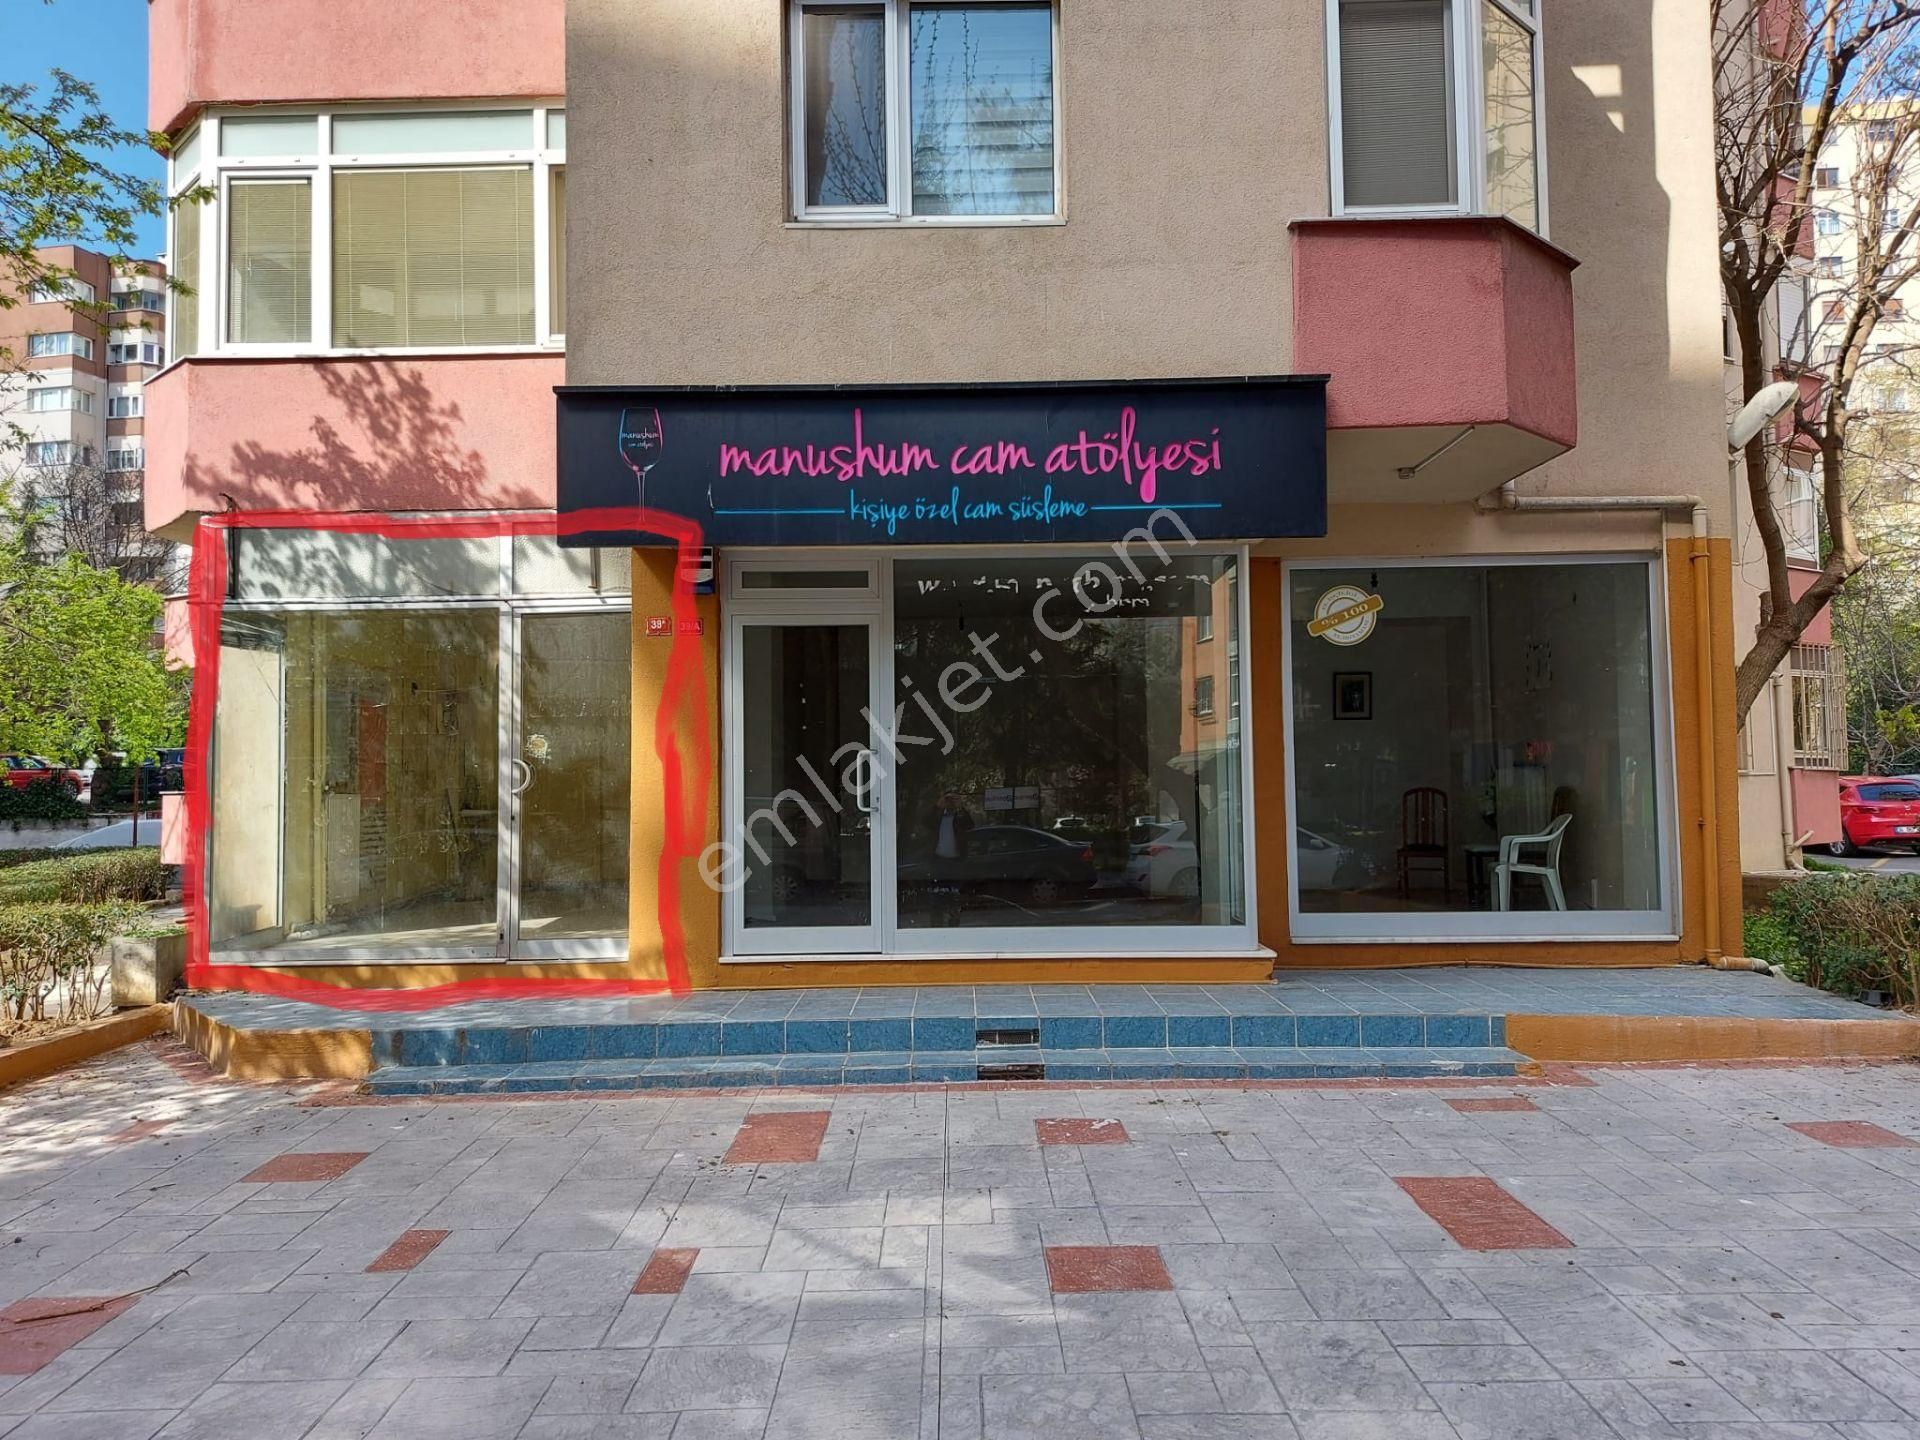 Kadıköy Kozyatağı Kiralık Dükkan & Mağaza  kozyatağı hilmipaşa caddesinde ful eşyalı dükkan,ofis